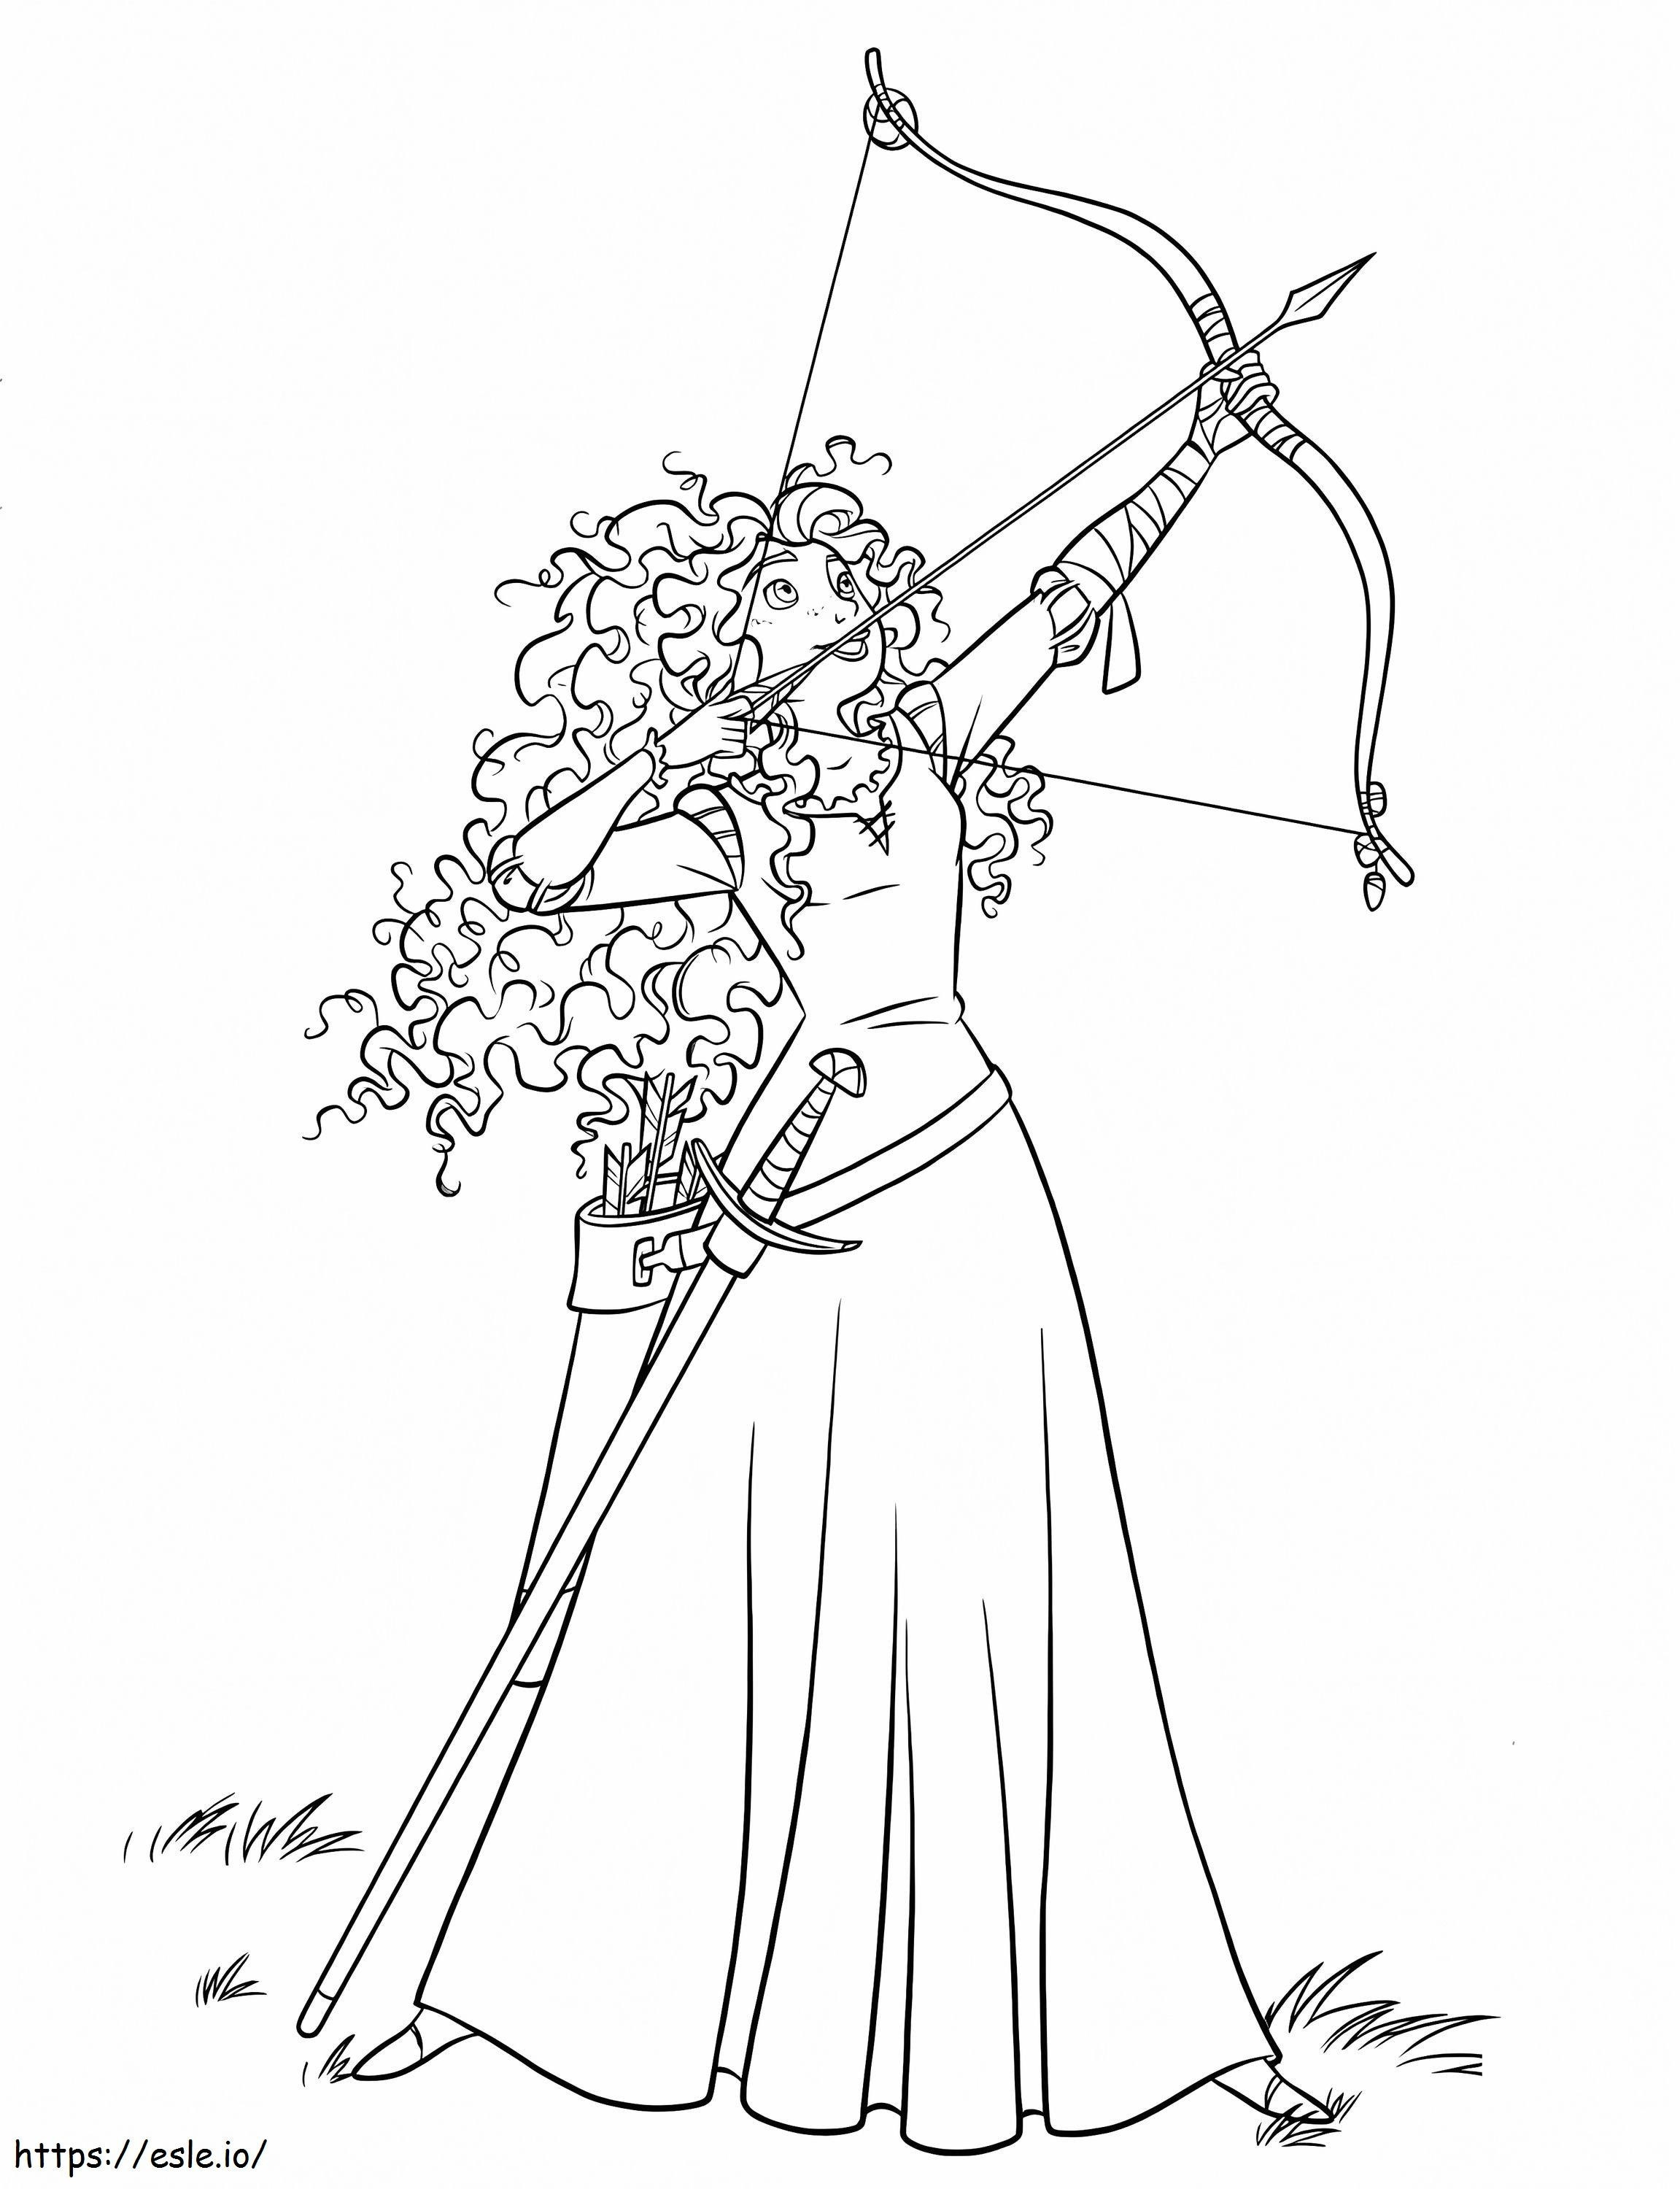 Prinzessin Merida mit Pfeil und Bogen 2 ausmalbilder